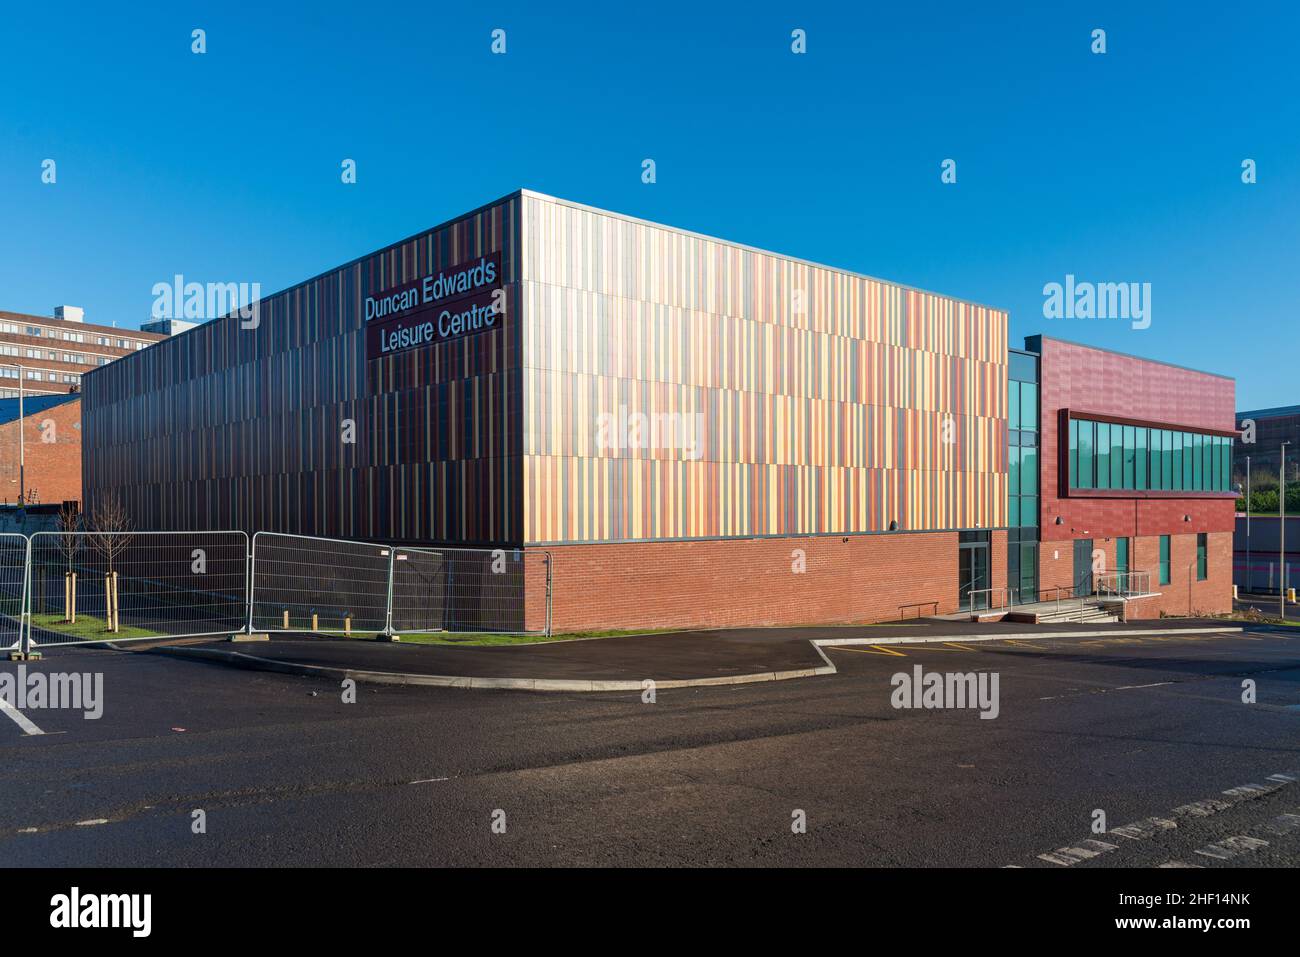 Il Duncan Edwards Leisure Centre di Dudley, West Midlands, di recente costruzione, ha aperto il 24 gennaio 2022 Foto Stock